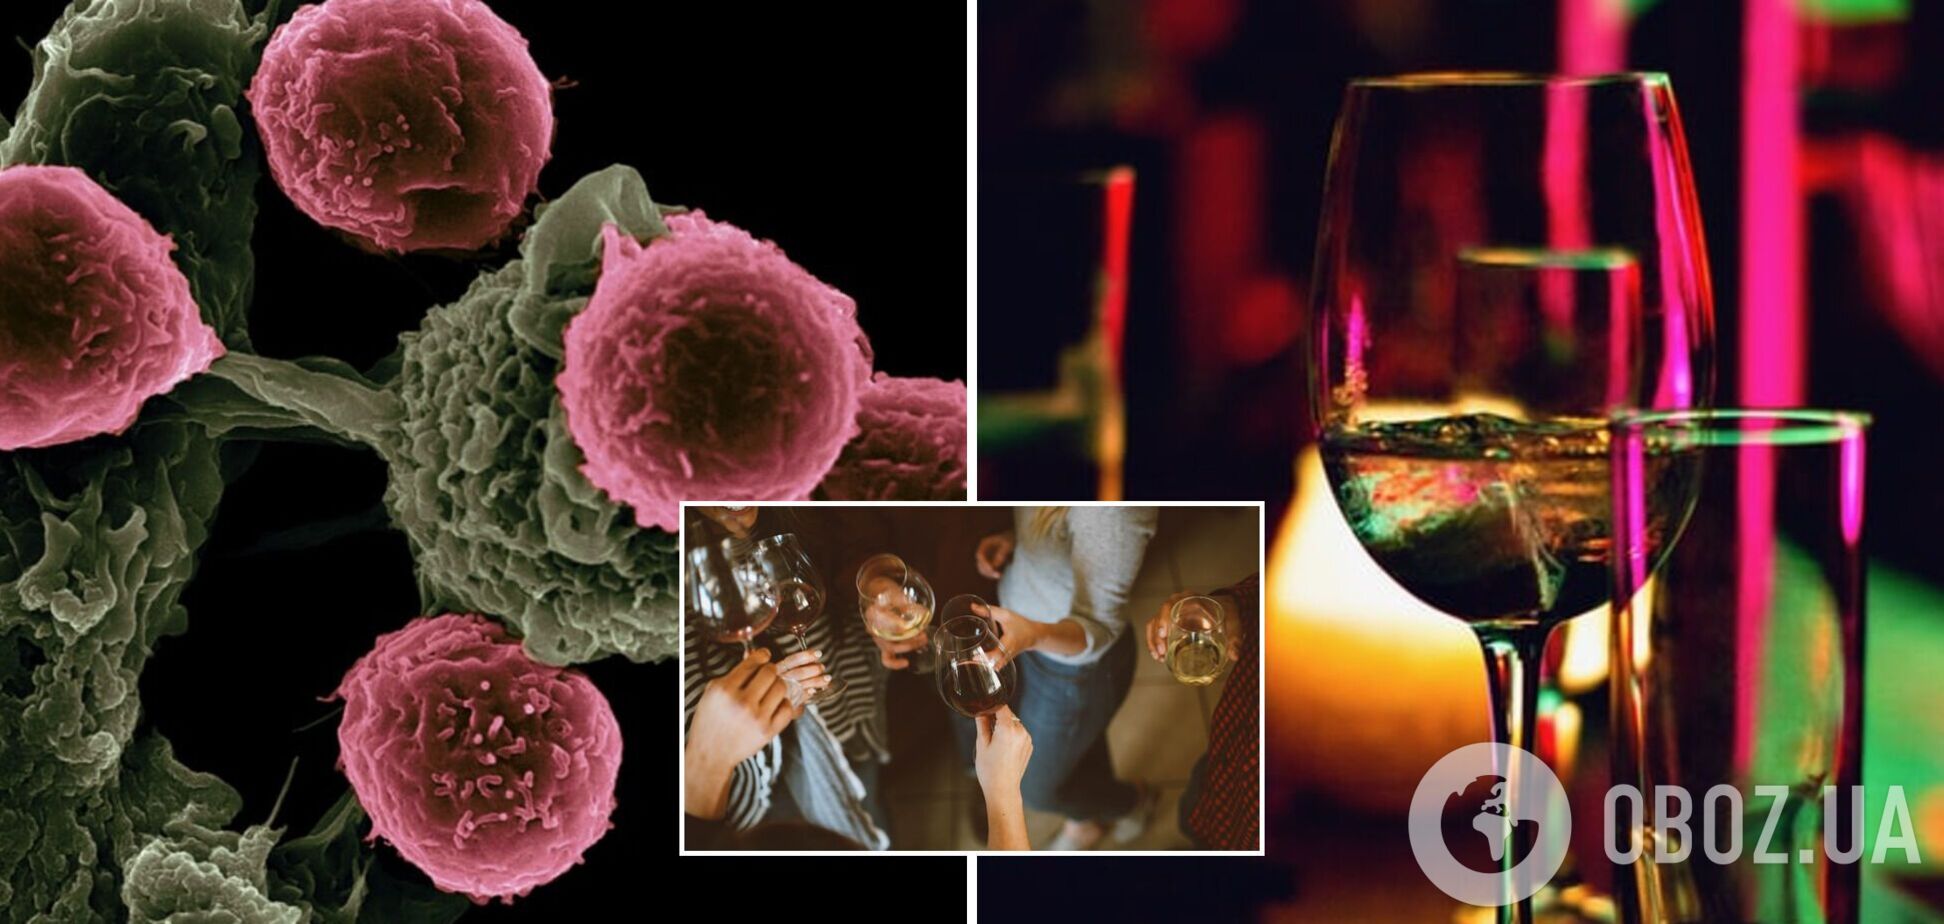 Употребление алкоголя может повысить риск развития рака: результаты исследования